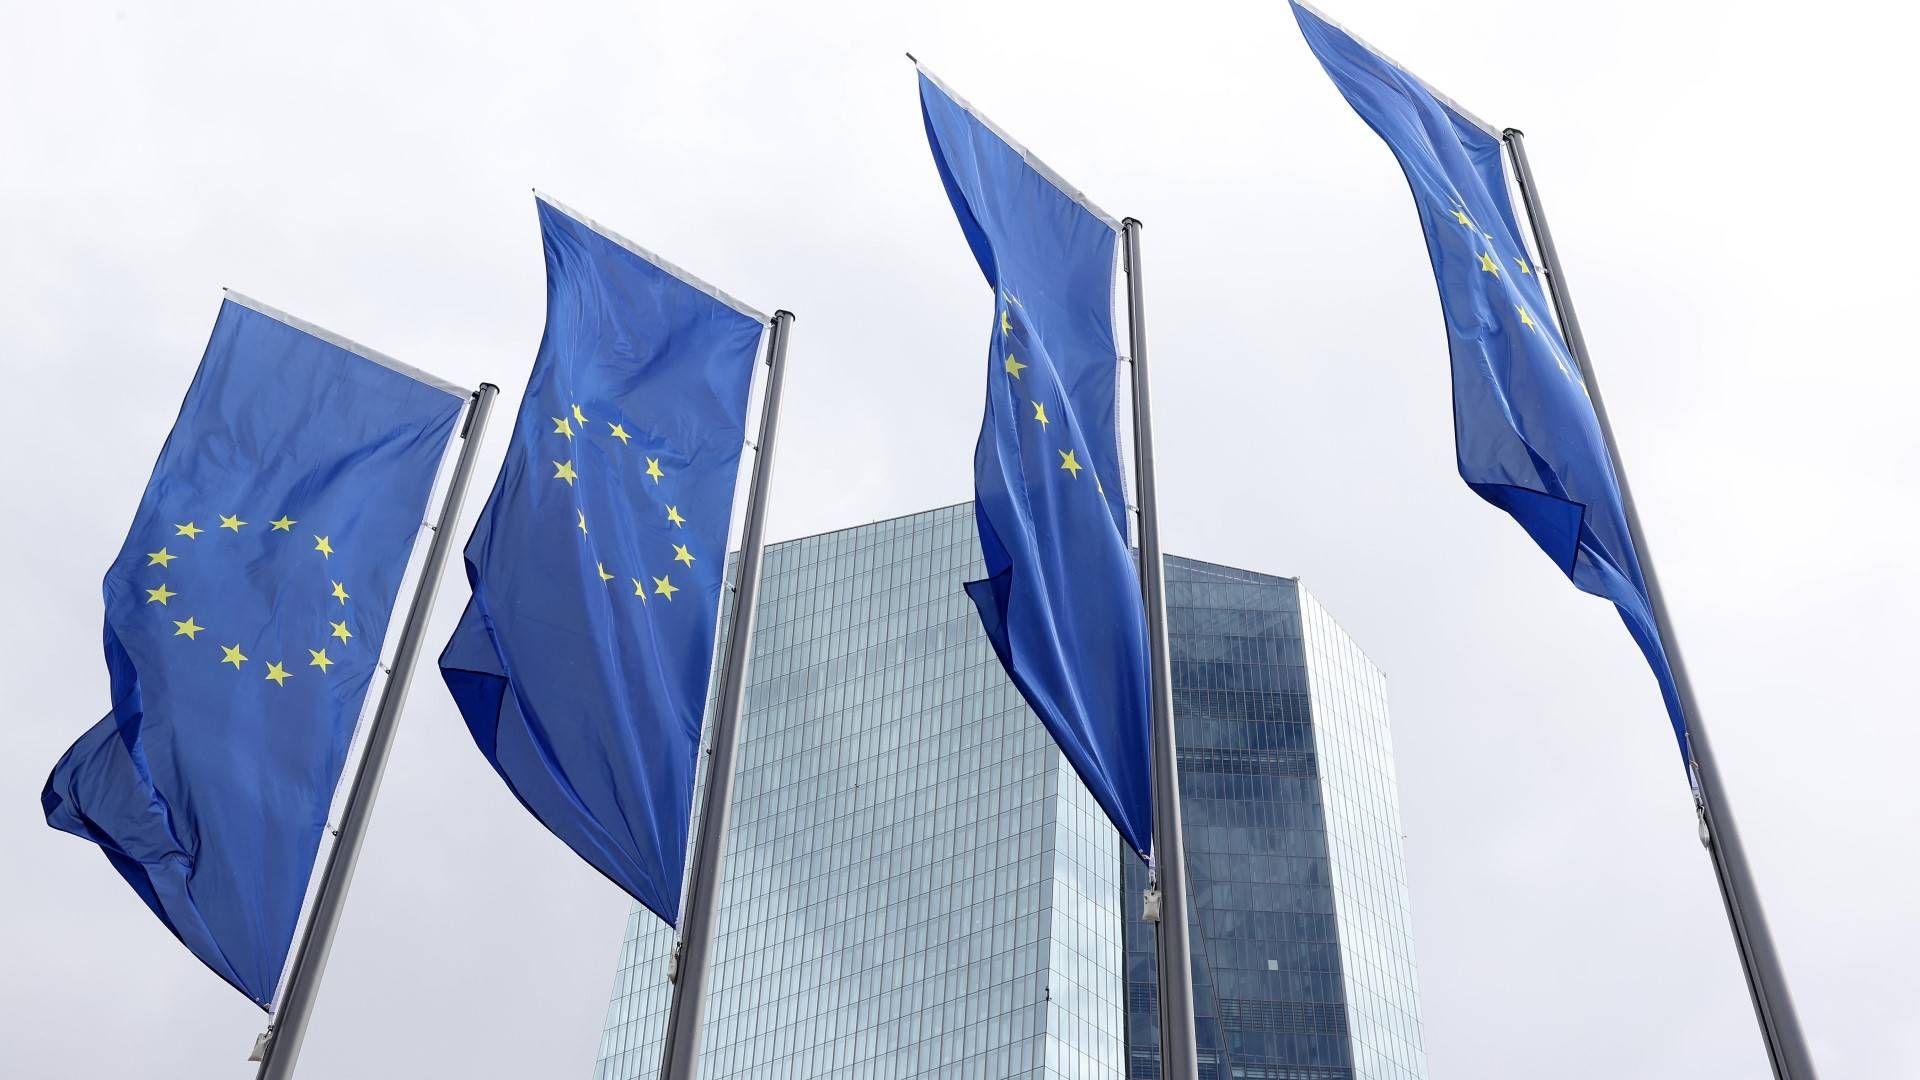 Europa-Flaggen vor dem Sitz der EZB in Frankfurt am Main. | Foto: picture alliance/augenklick